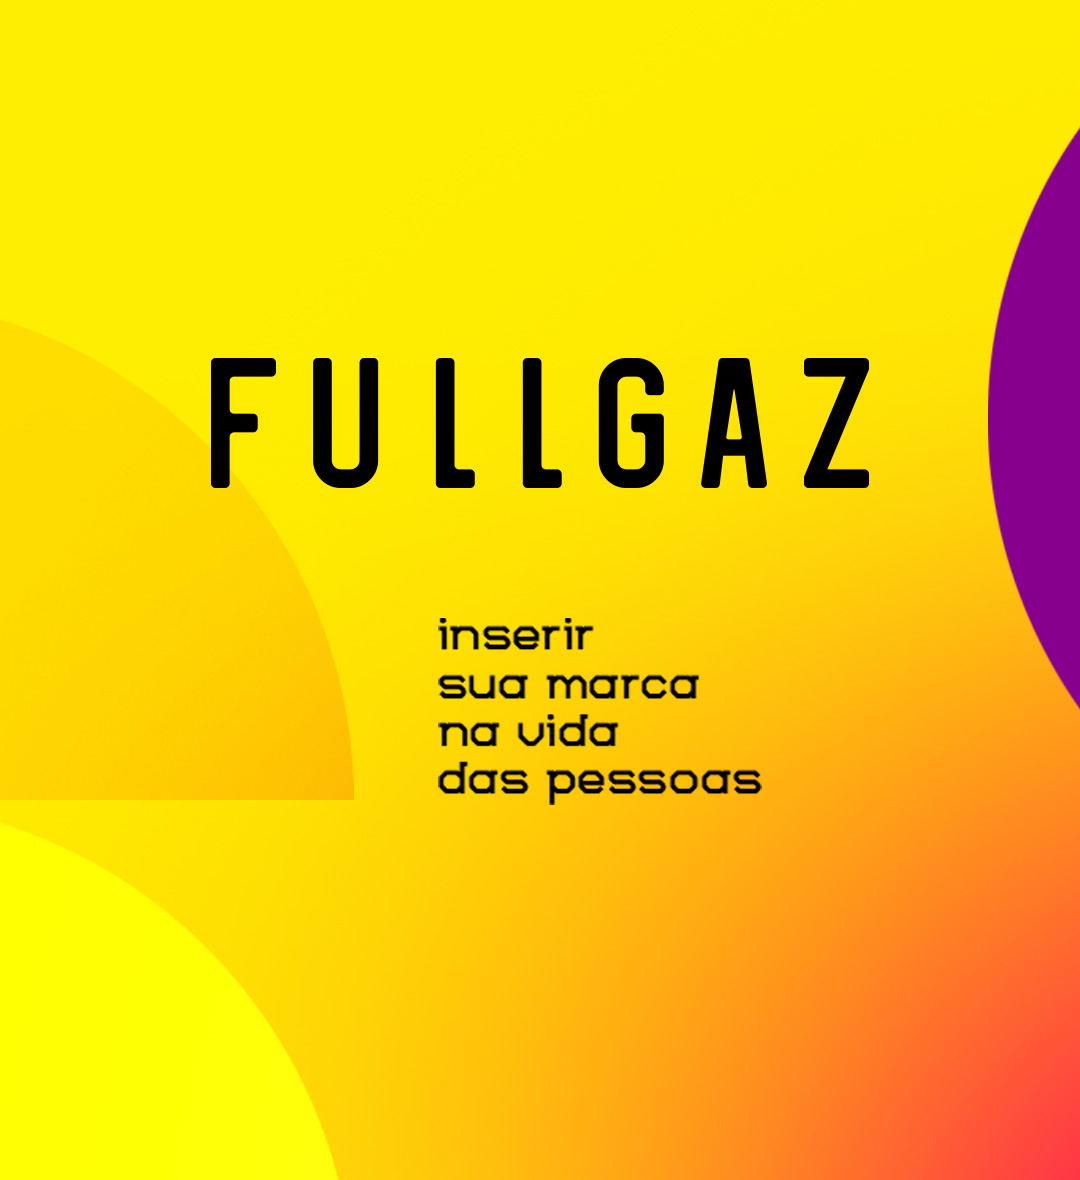 (c) Fullgaz.com.br